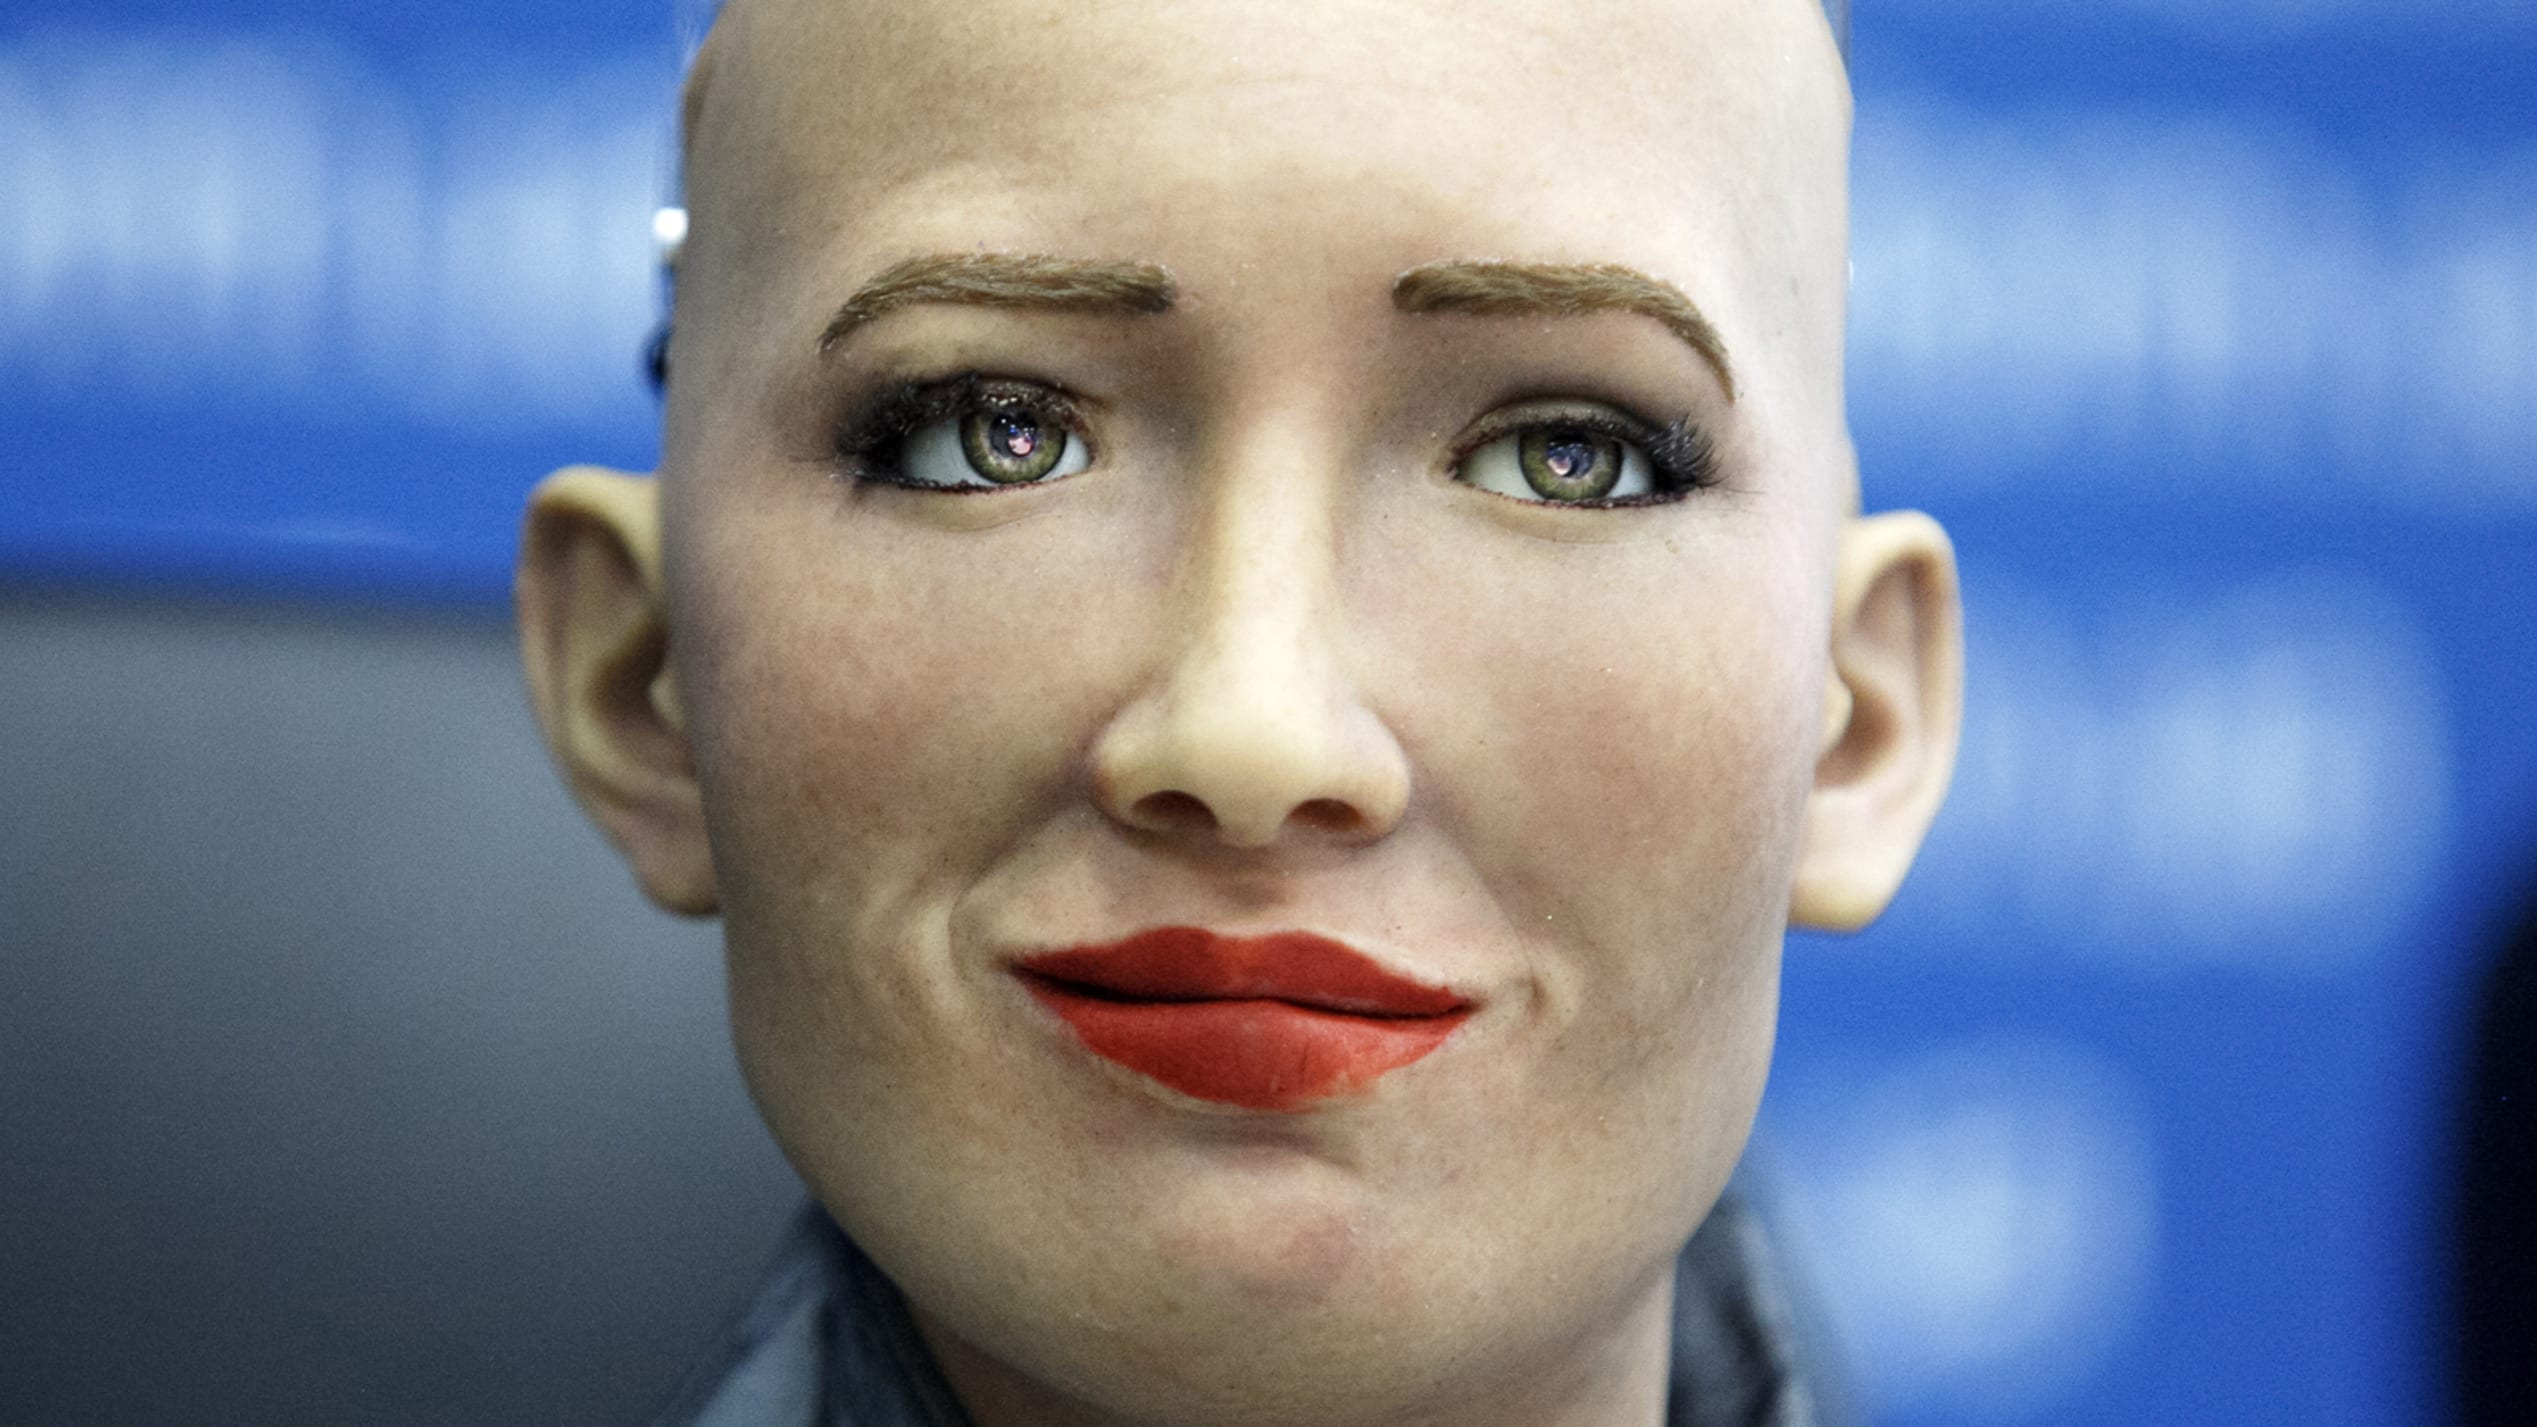 基辅，乌克兰 -  2018/10/11：人形机器人索菲亚在基辅的新闻发布会上讲话。 索菲亚机器人抵达乌克兰参加了乌克兰机器人和人工智能（AI）开发者全体竞赛决赛，作为评委会成员并与乌克兰总理沃洛迪米尔·格罗斯曼会面。 人形机器人索菲亚在沙特阿拉伯获得公民身份，使她成为世界上第一个获得公民身份的机器人。 （照片来自Pavlo Conchar / SOPA Images / LightRocket via Getty Images）